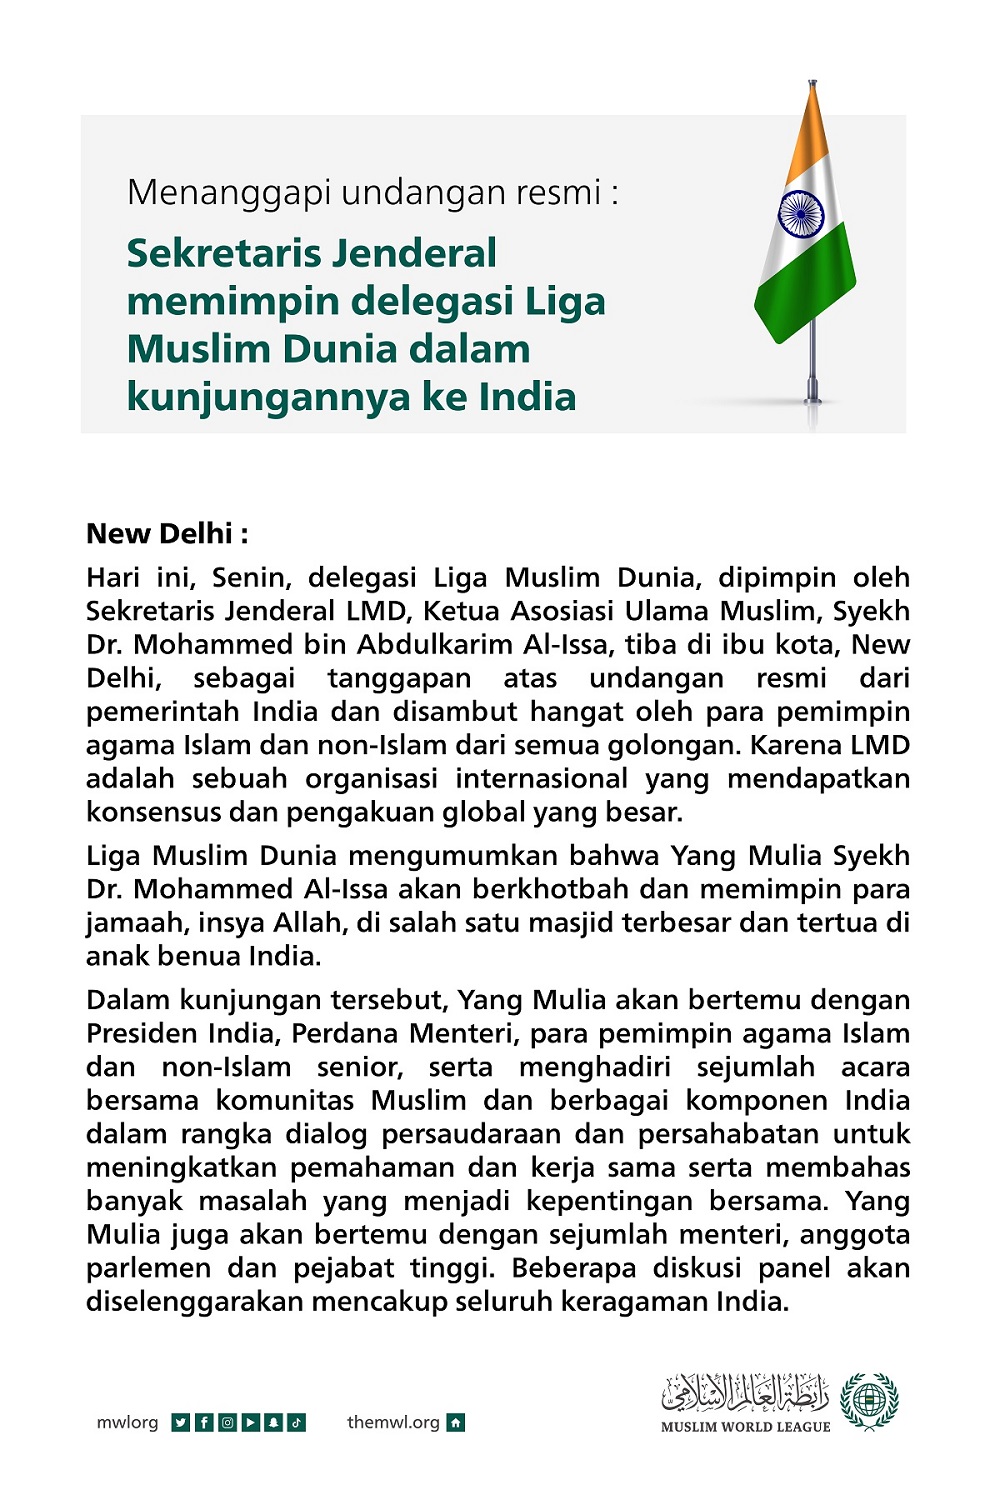 Menanggapi undangan resmi: Sekretaris Jenderal memimpin delegasi Liga Muslim Dunia dalam kunjungannya ke India